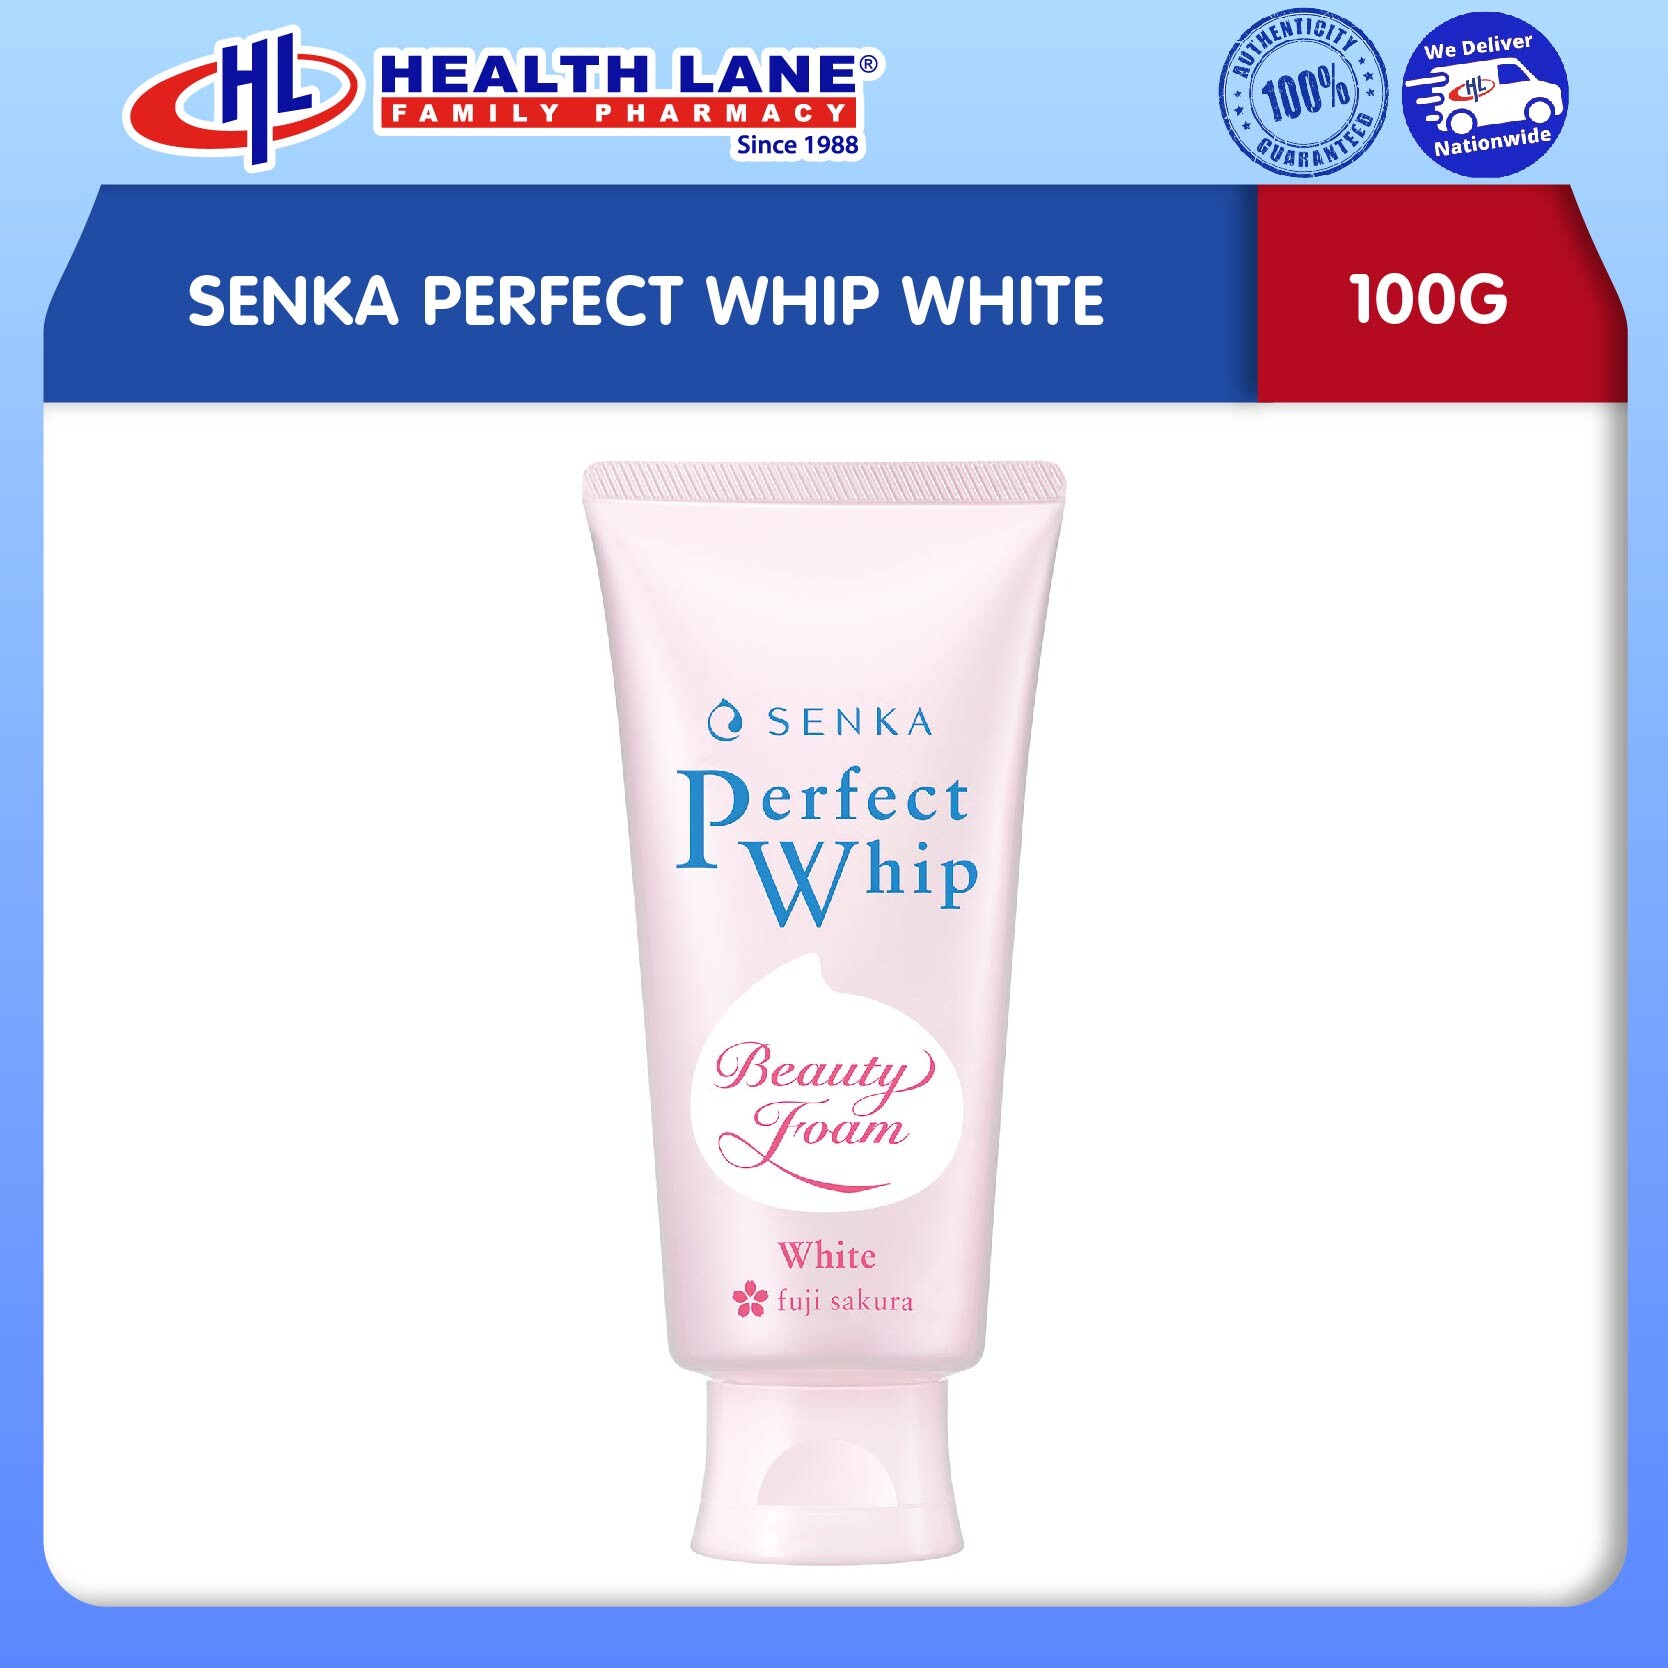 SENKA PERFECT WHIP WHITE (100G)